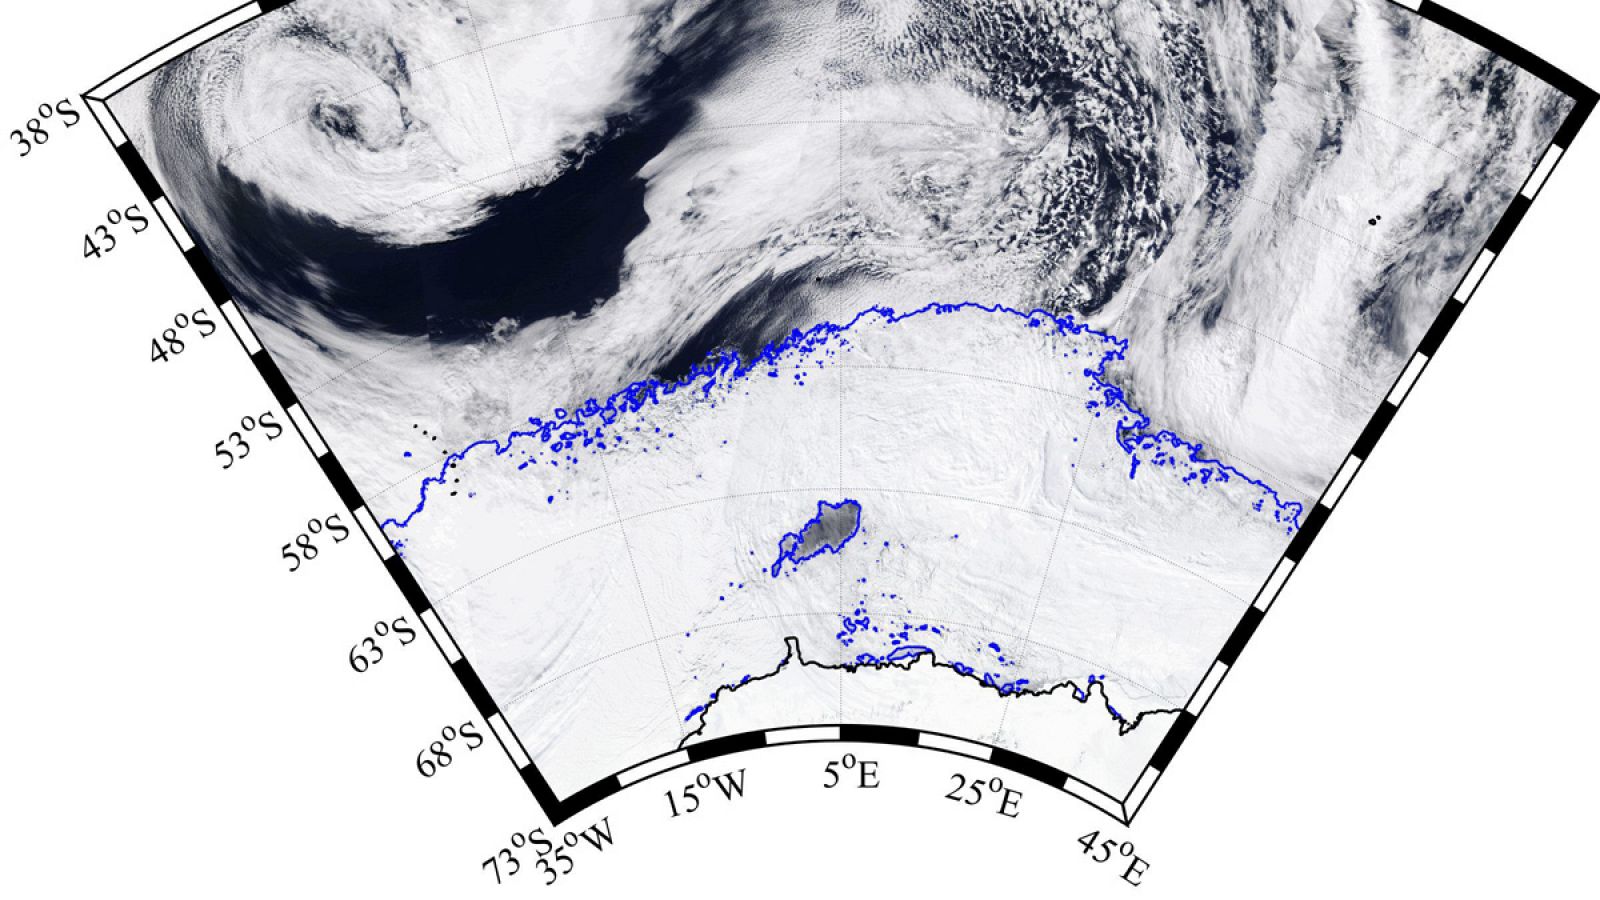 La polinia surgida en la Antártida, delimitada en color azul en la parte inferior de la imagen.